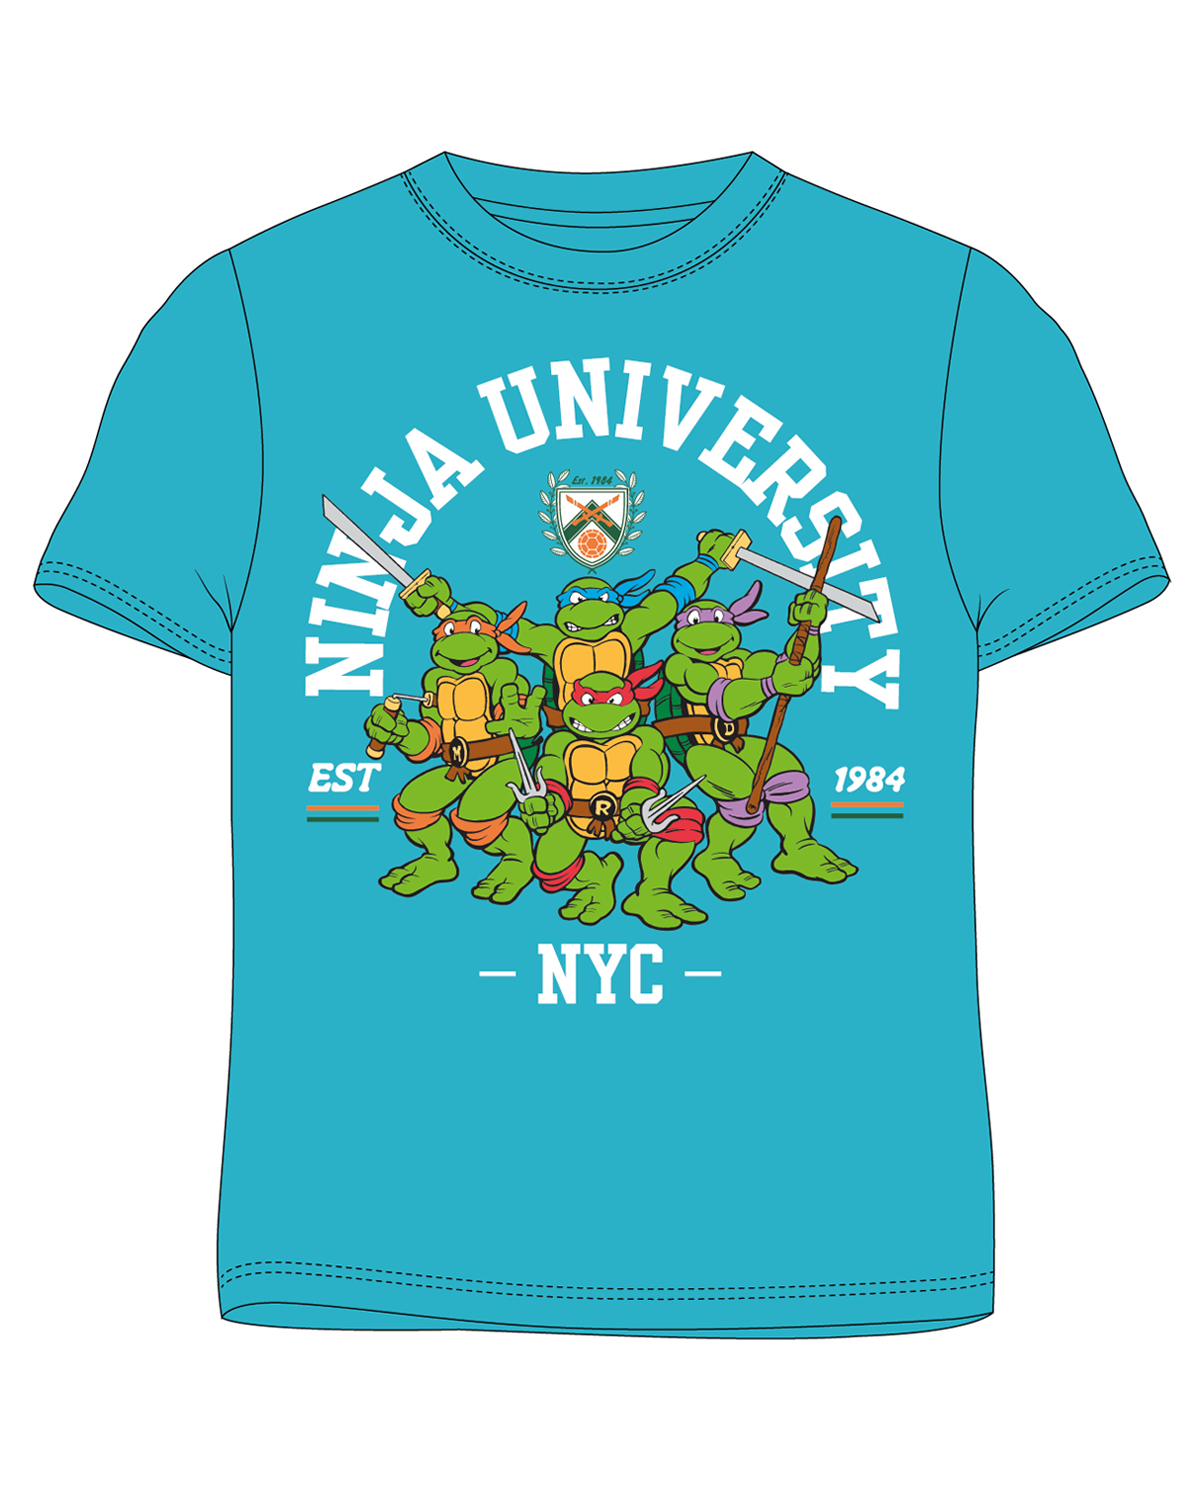 Želvy Ninja - licence Chlapecké tričko - Želvy Ninja 5202061, tyrkysová Barva: Tyrkysová, Velikost: 122